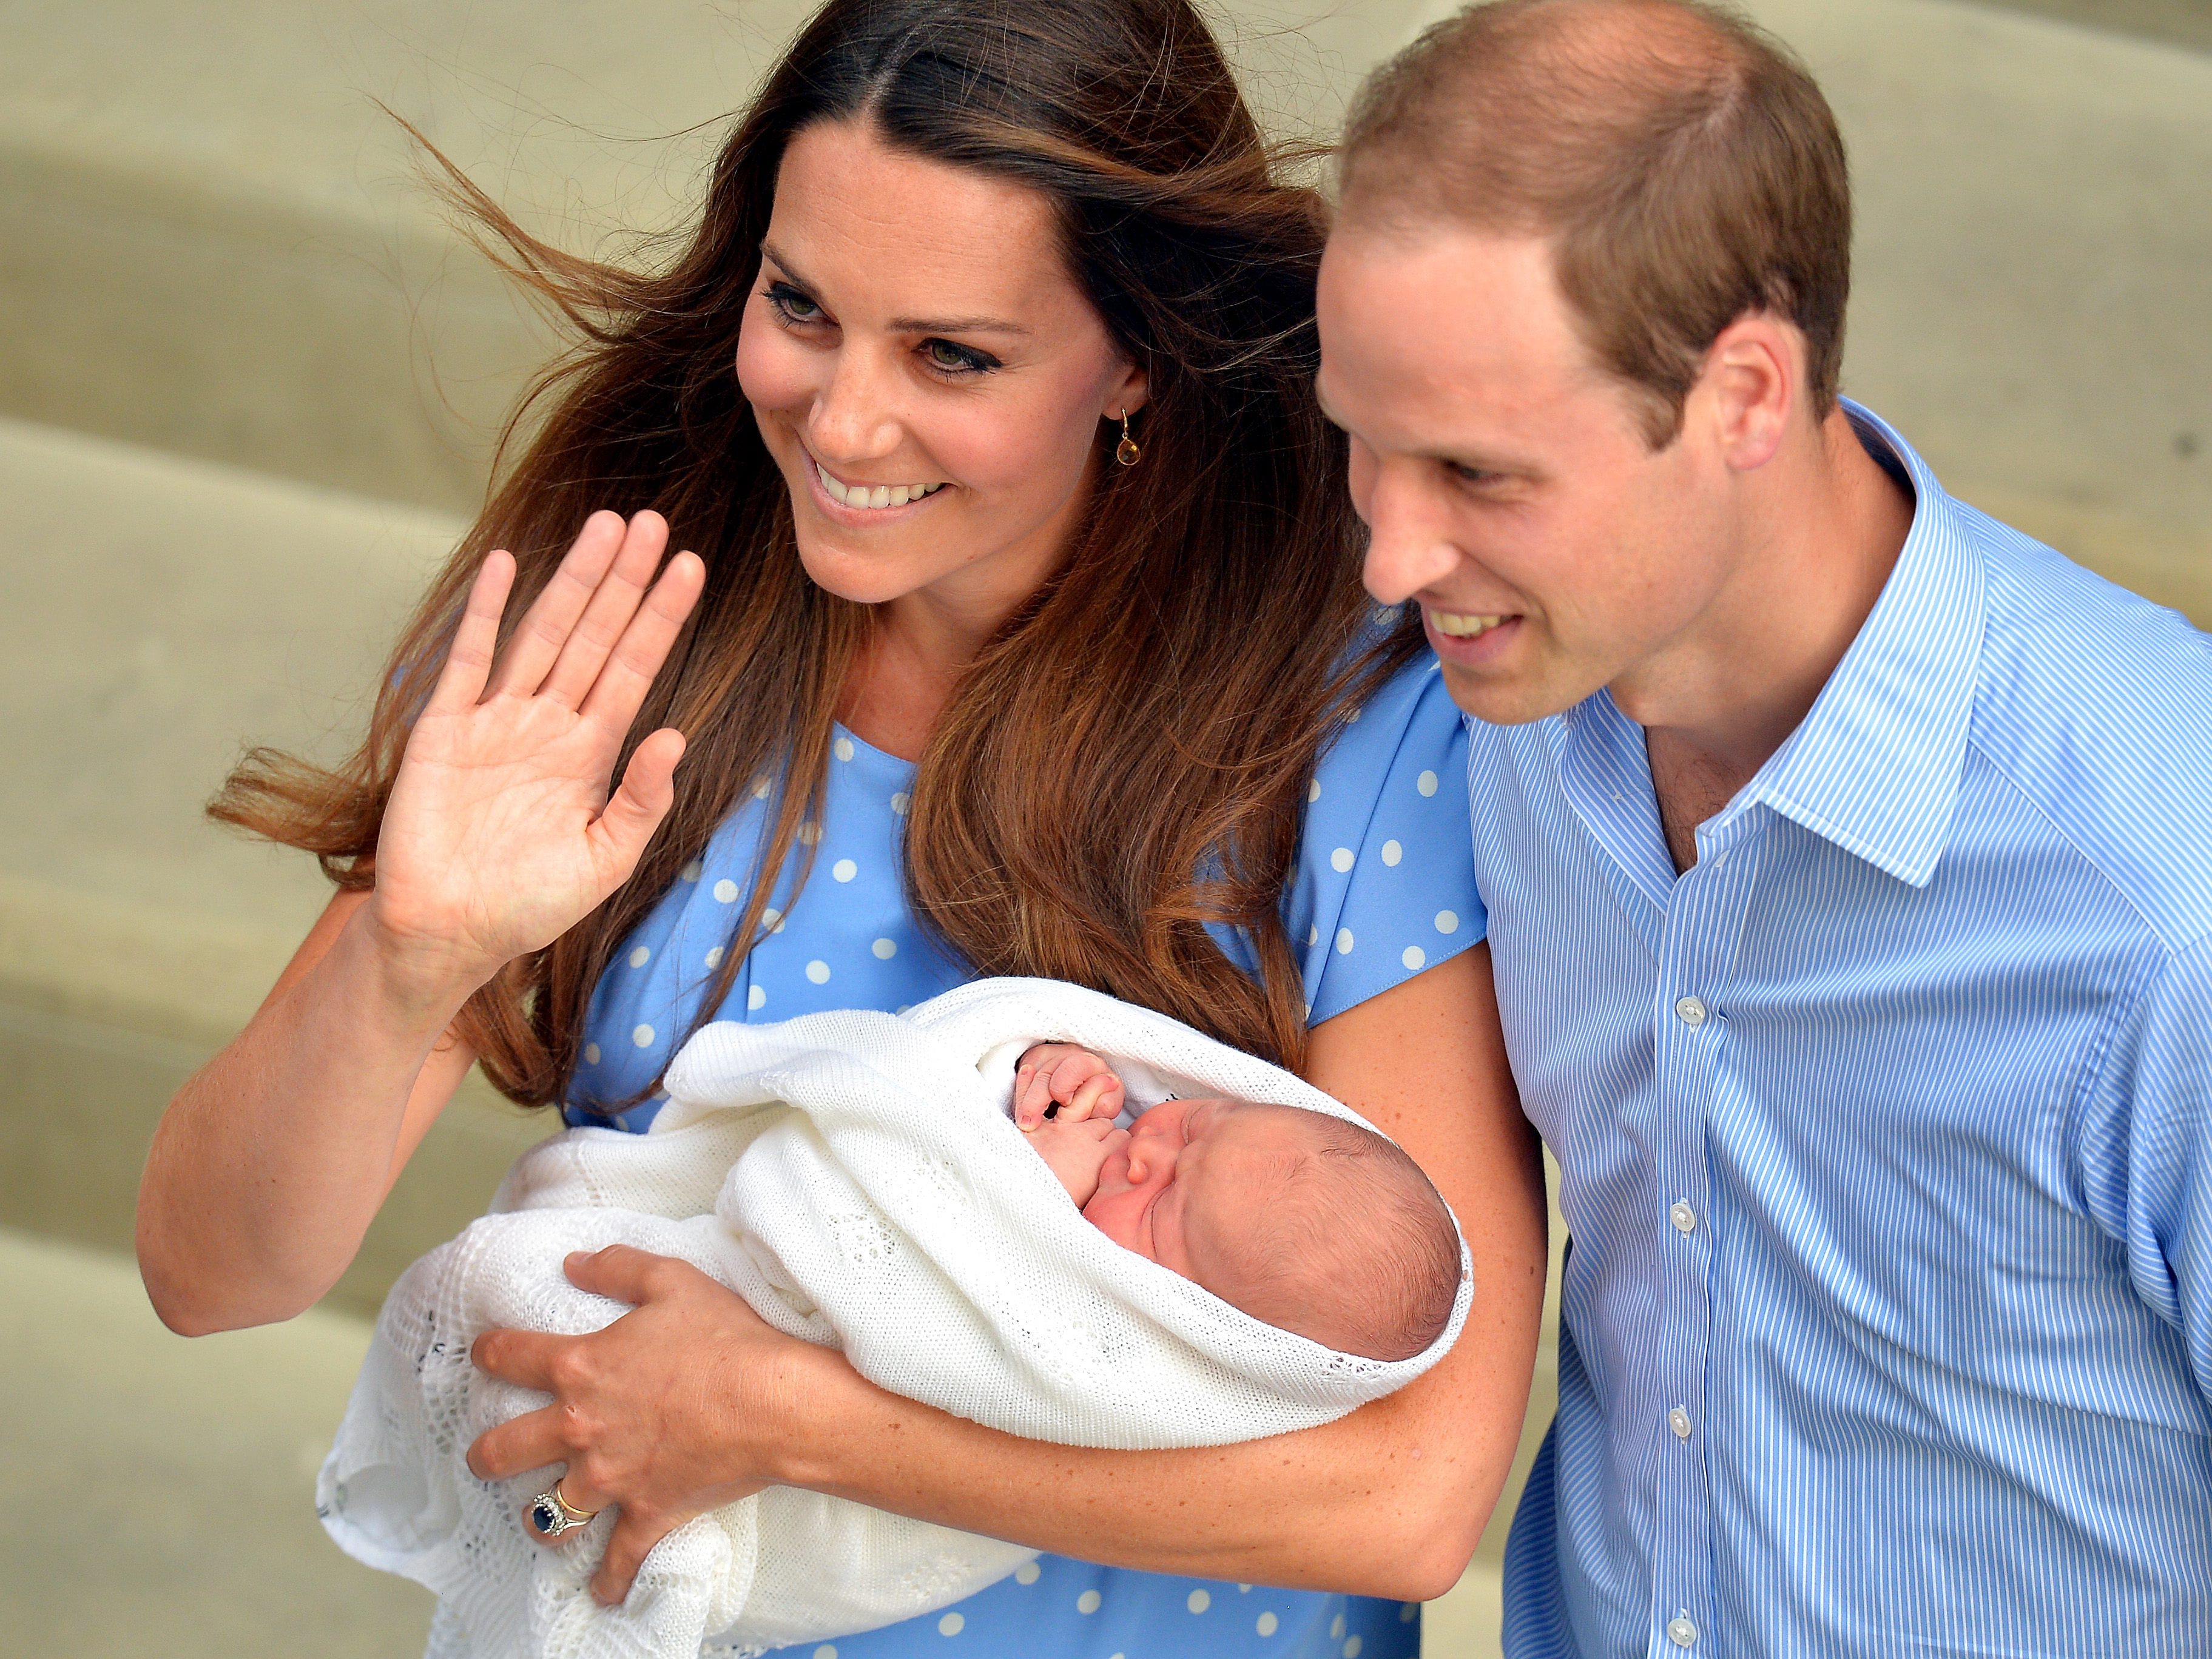 25 лет когда родился. Кейт Миддлтон и принц Джордж. Сын Уильяма и Кейт Миддлтон. Принц Луи Кембриджский. Семья принца Уильяма и Кейт Миддлтон.